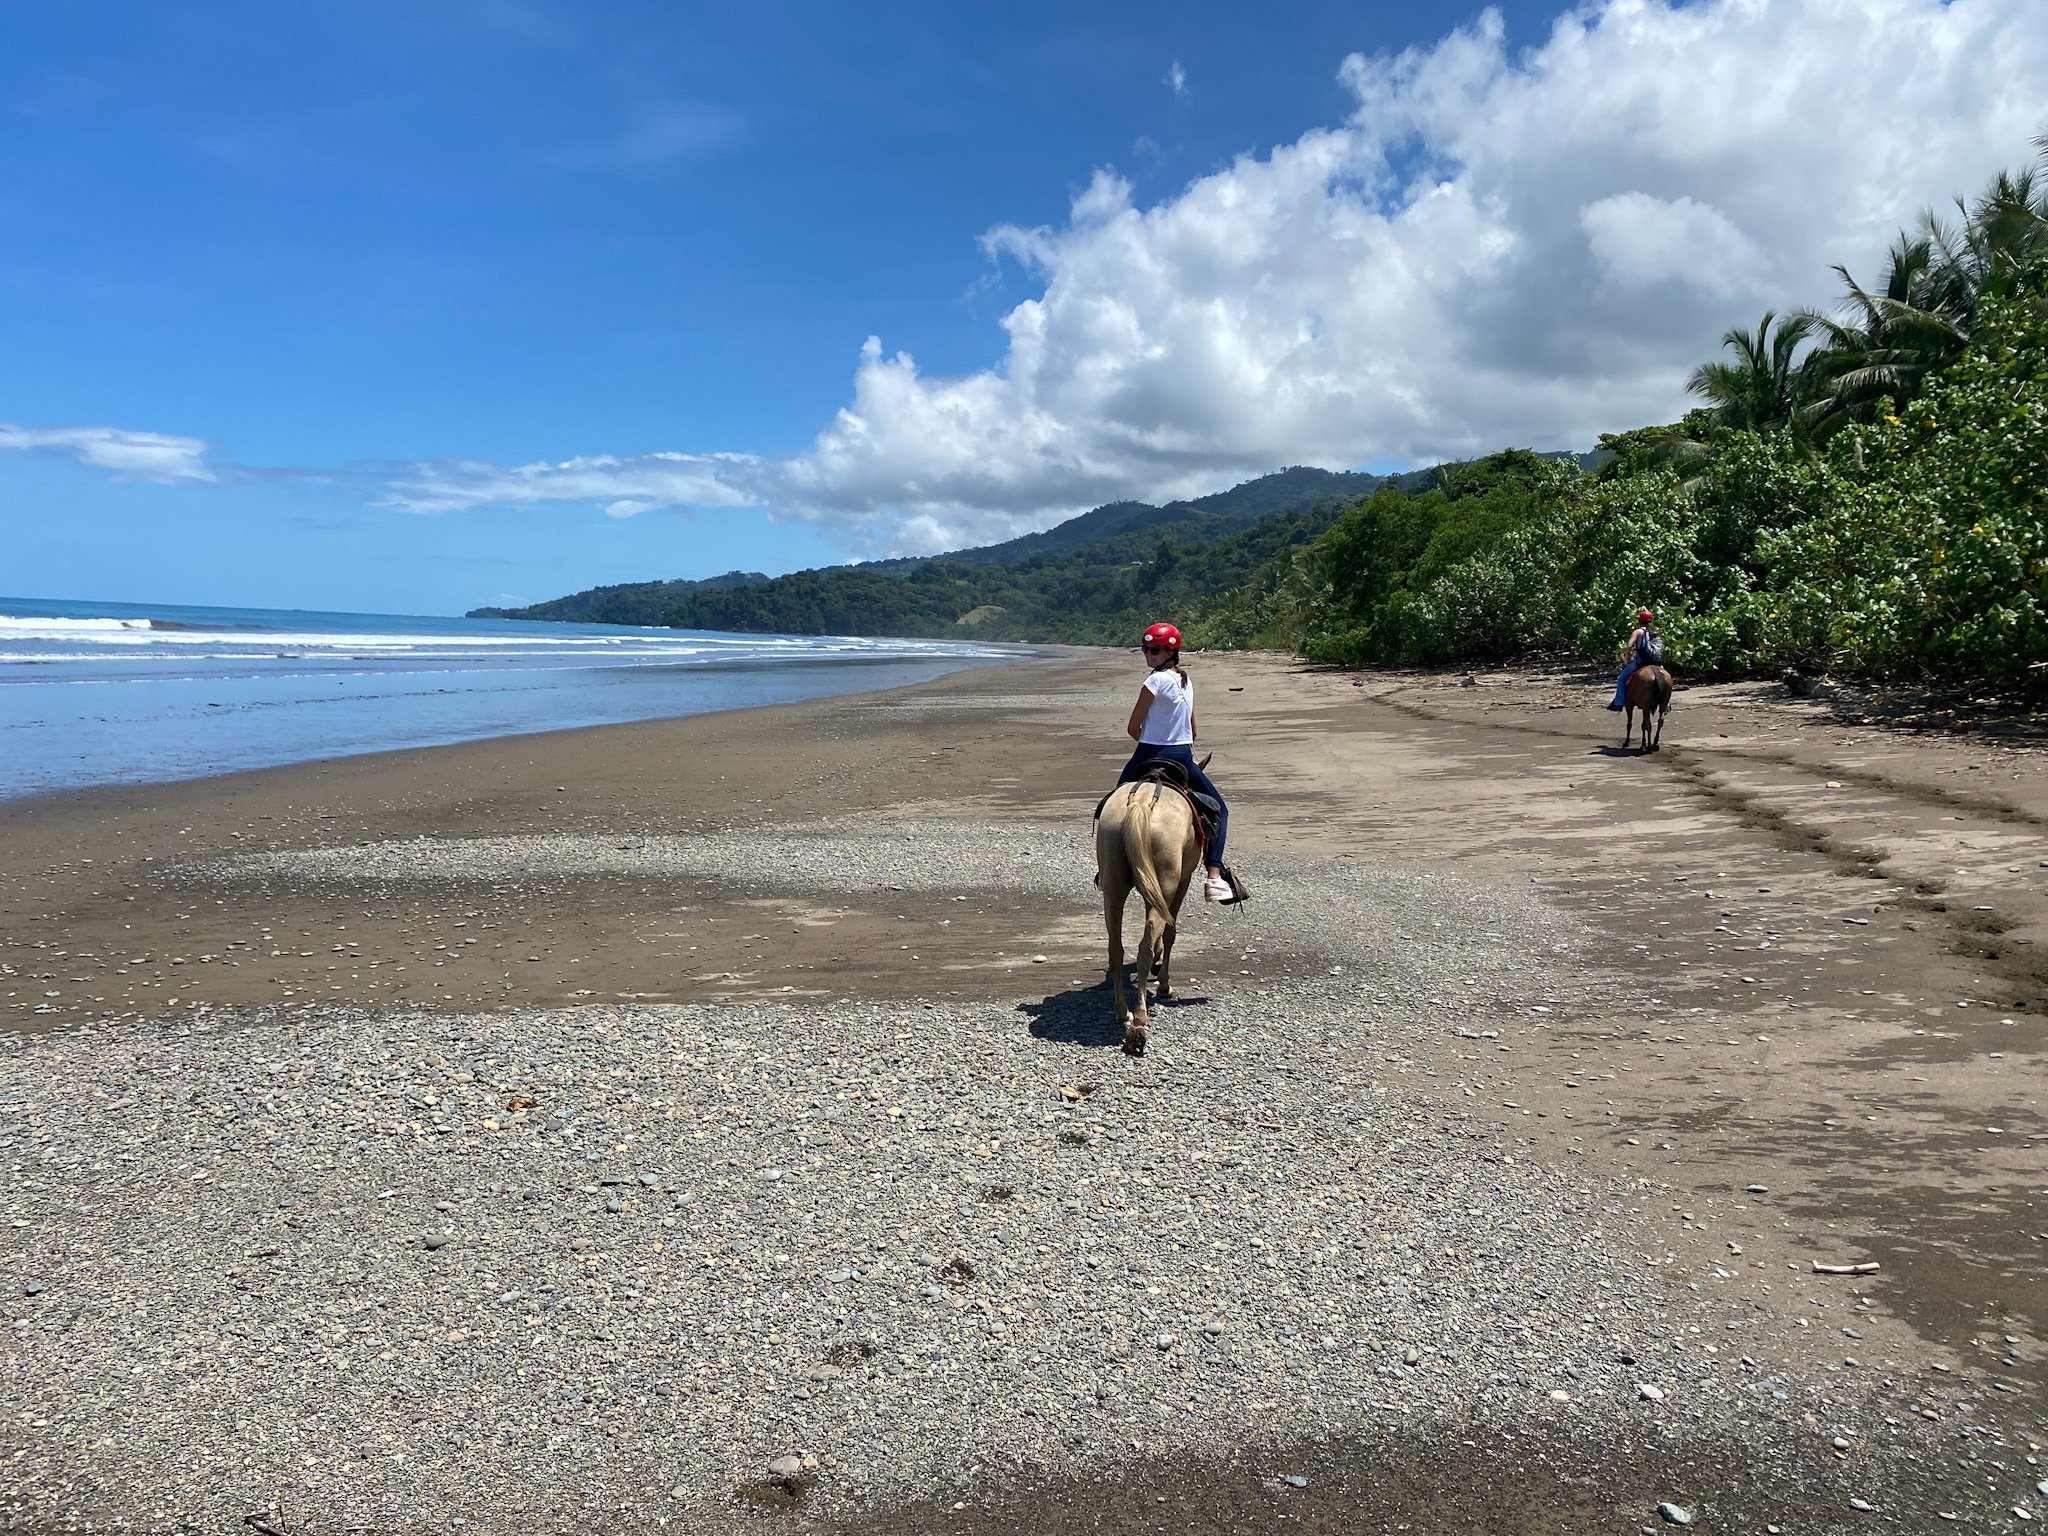 Urlaub mit Jugendlichen - Urlaub mit pubertierenden Kindern - Reiseziele für Jugendliche - Urlaub mit Jugendlichen am Meer - Costa Rica Reitausflug Strand